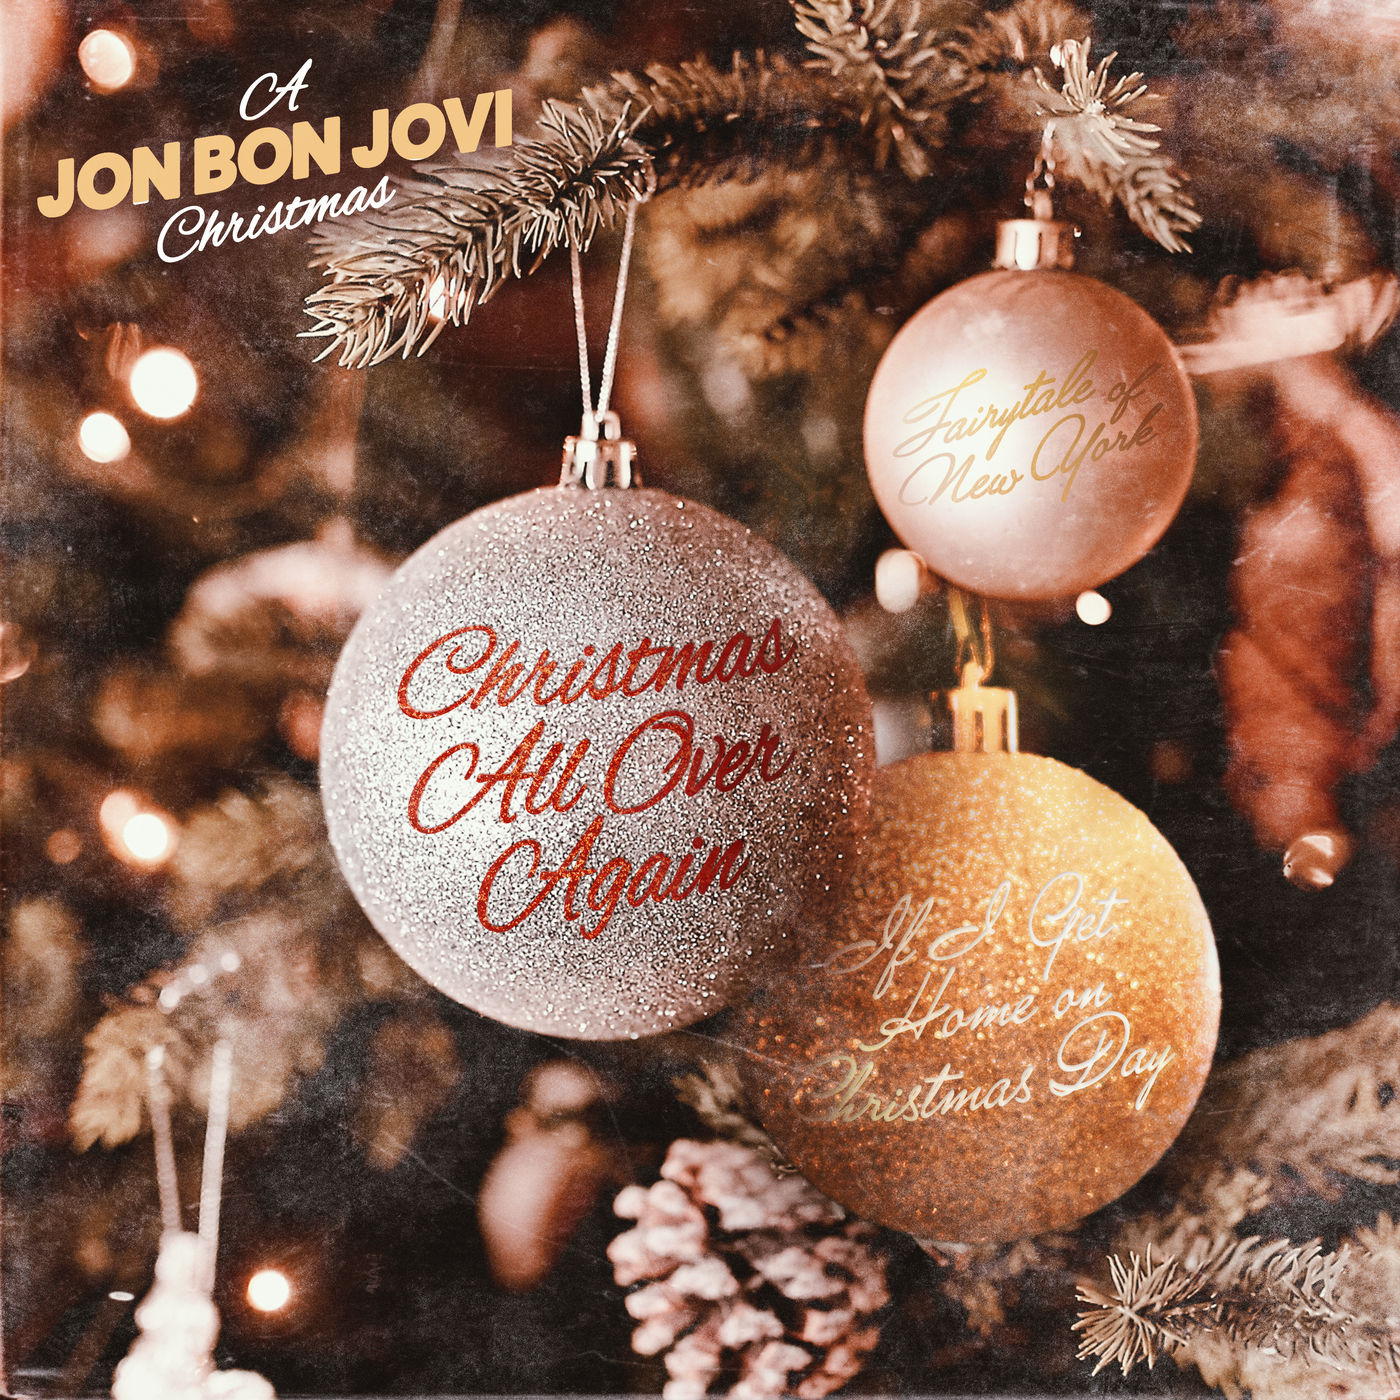 Jon Bon Jovi – A Jon Bon Jovi Christmas (2020) [FLAC 24bit/48kHz]